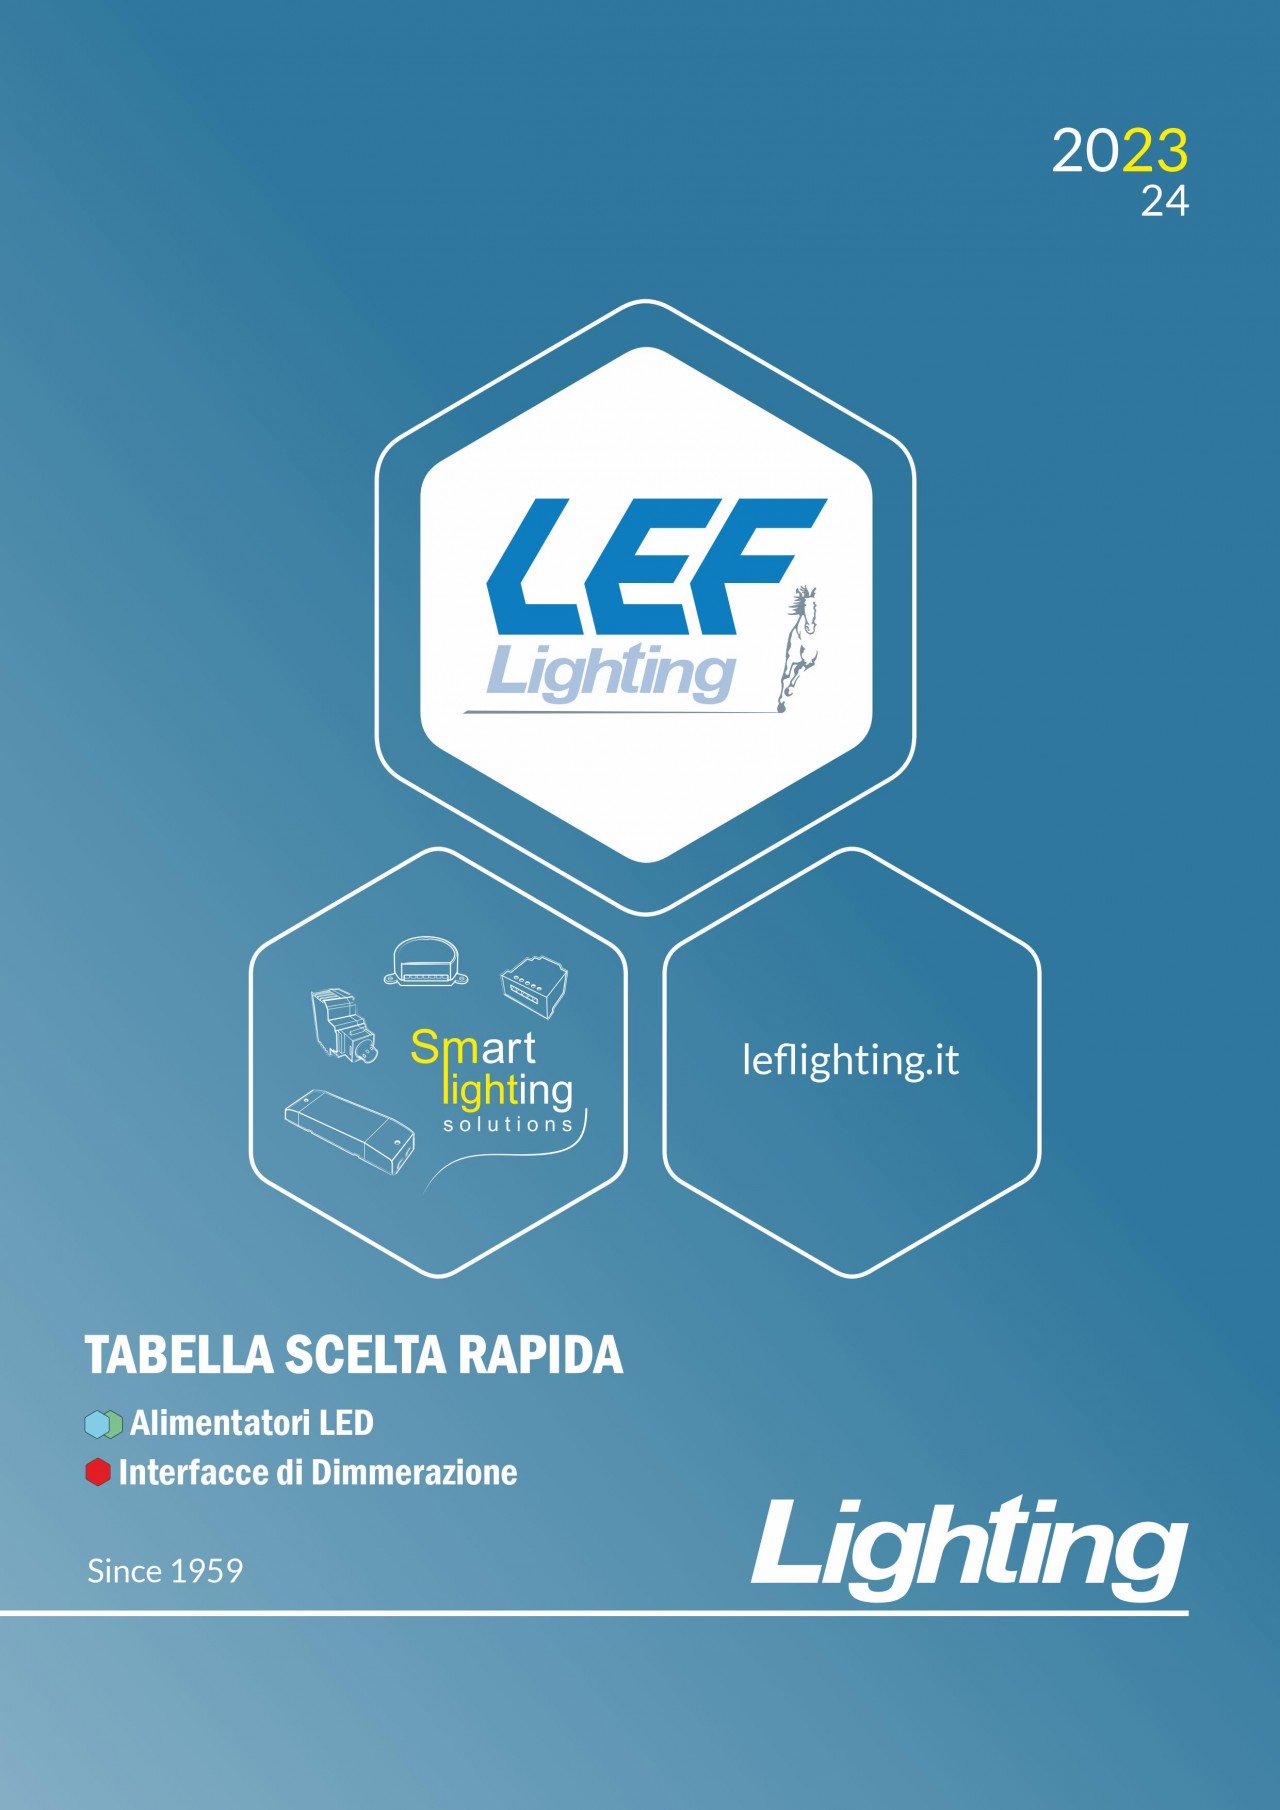 LEF_Lighting_tabella_scelta_rapida_2023-2024